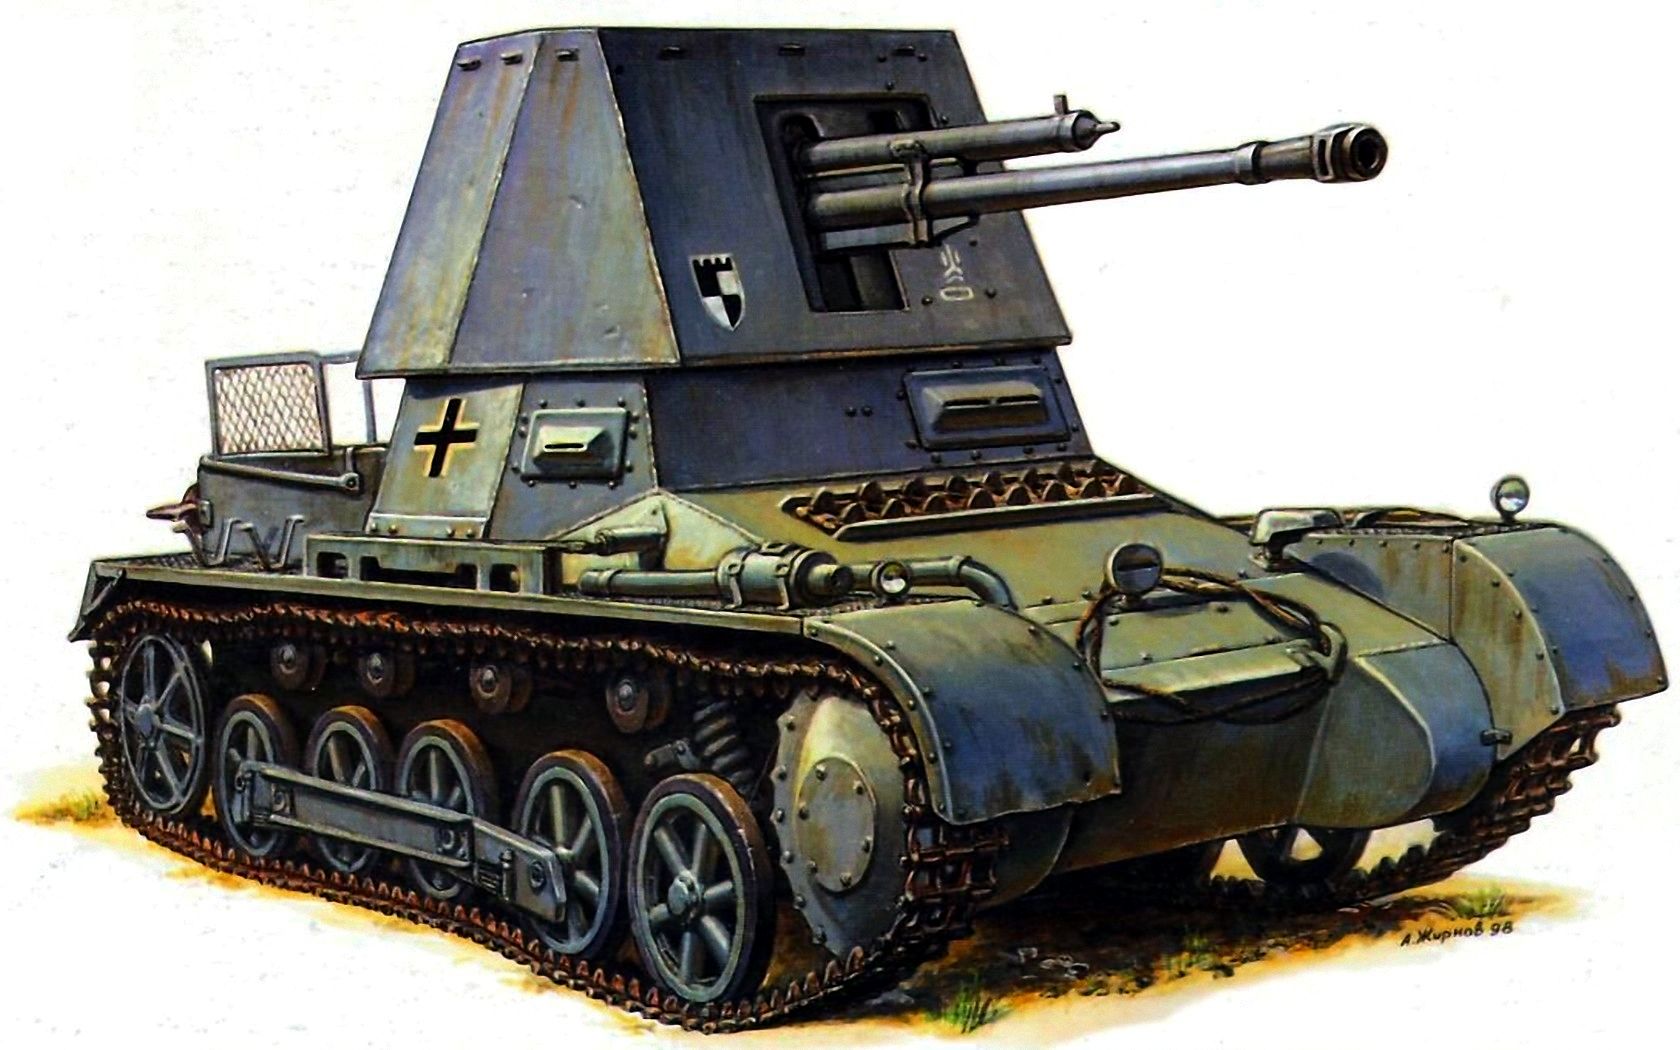 Жирнов Андрей. Танк Panzerjäger I 4.7cm PaK(t).